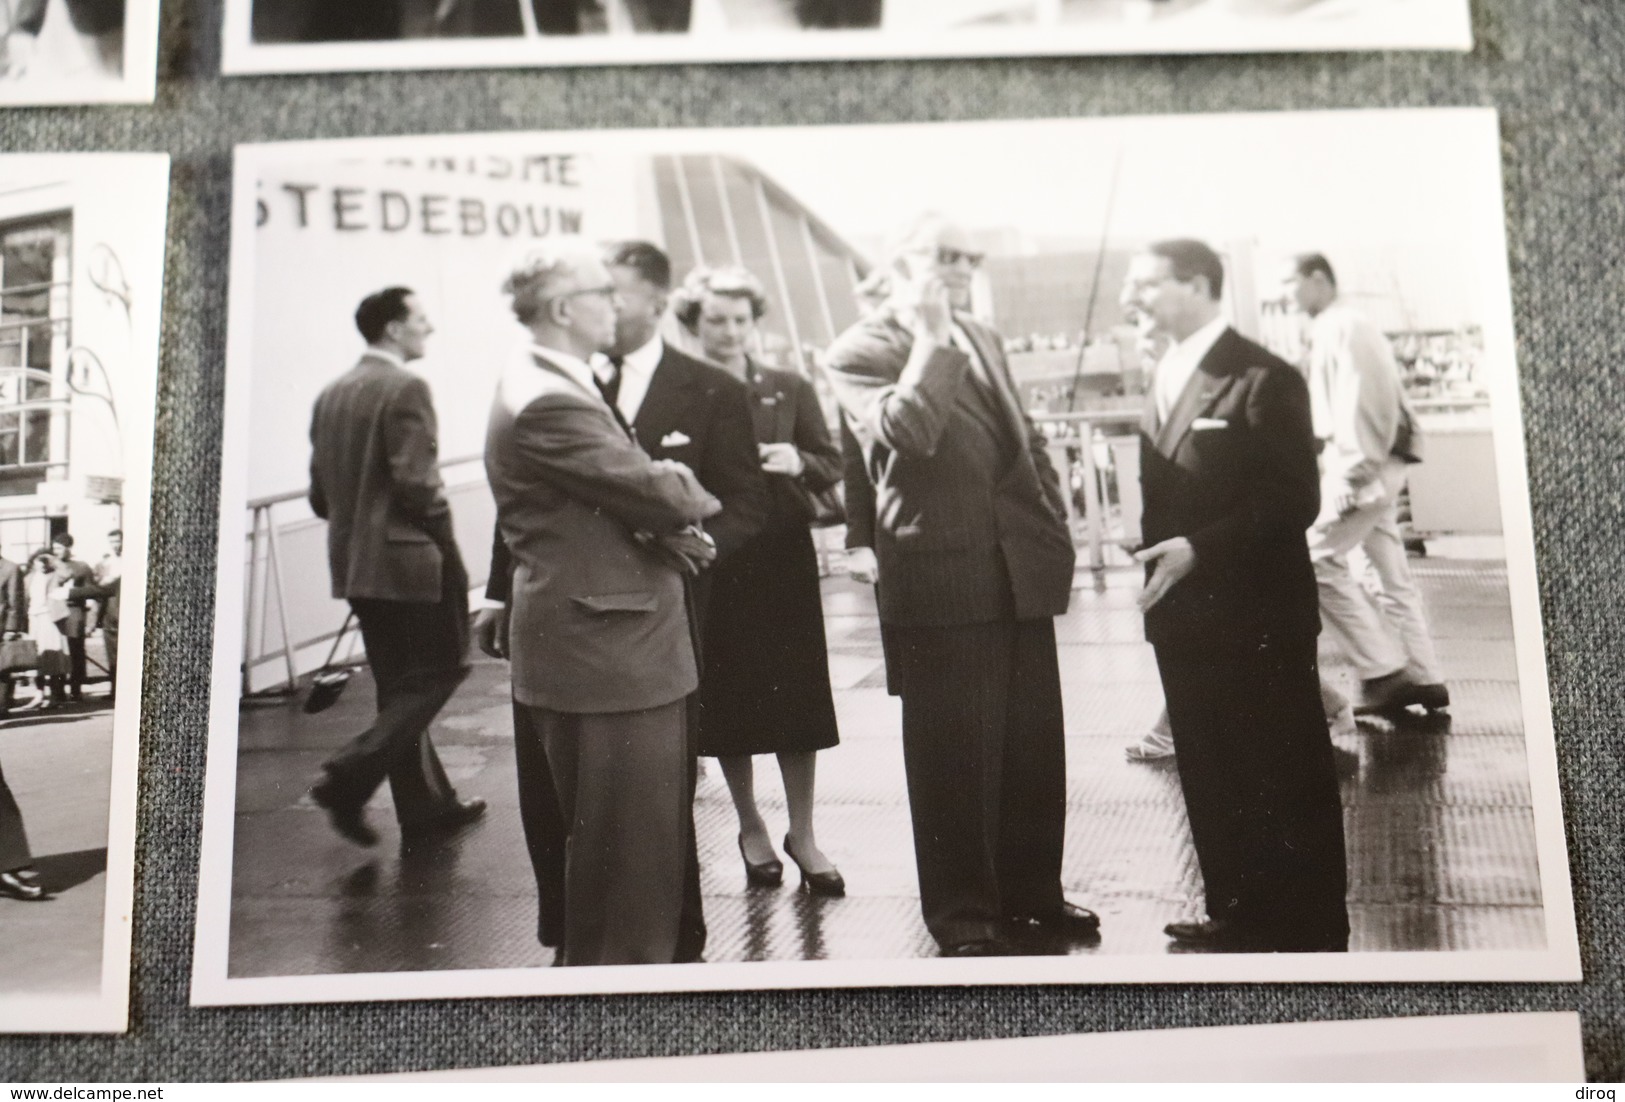 Exposition Bruxelles 1958 ,RARE photo originale avec le Roi Léopold ,lot de 10 photos,12 Cm. sur 9 Cm.Expo 58